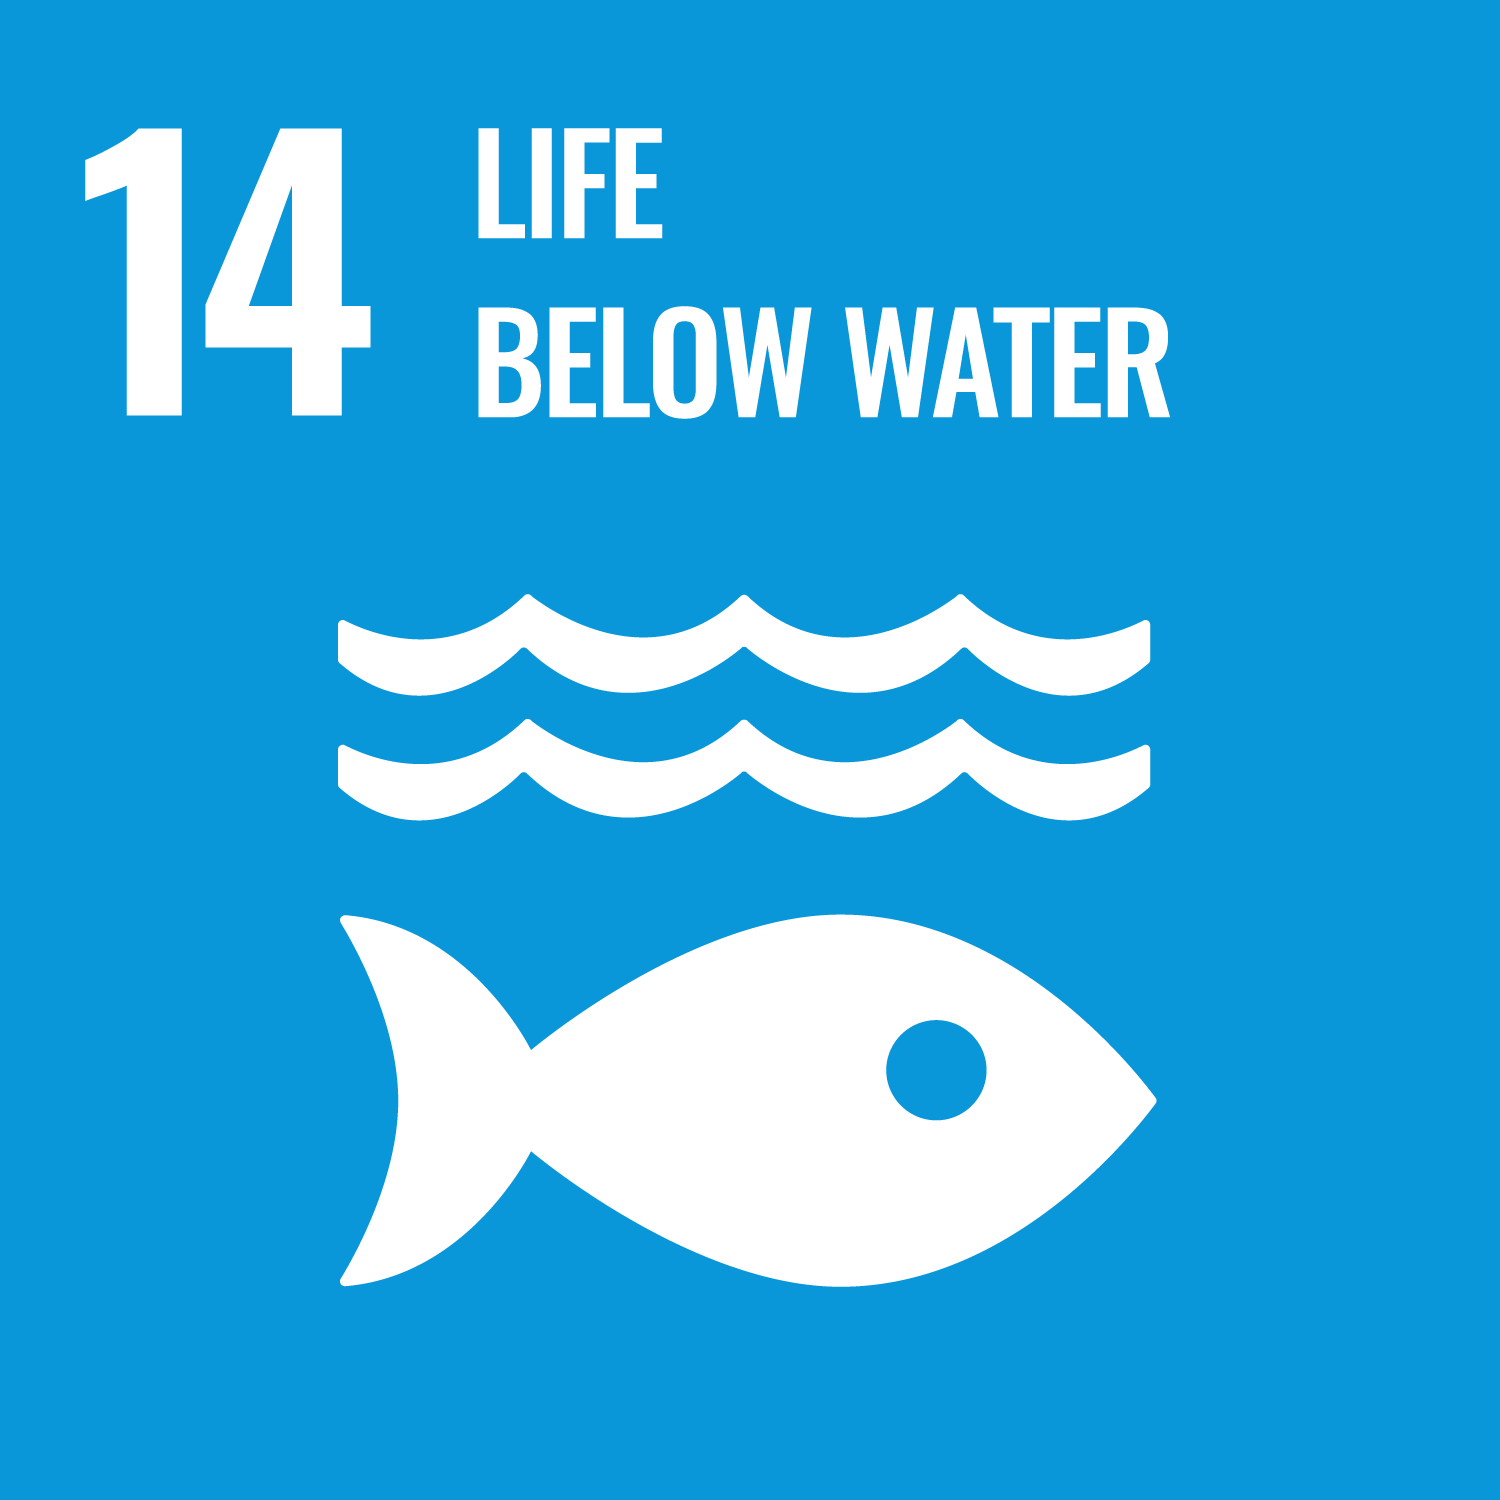 UN SDG 14 - Life Below Water